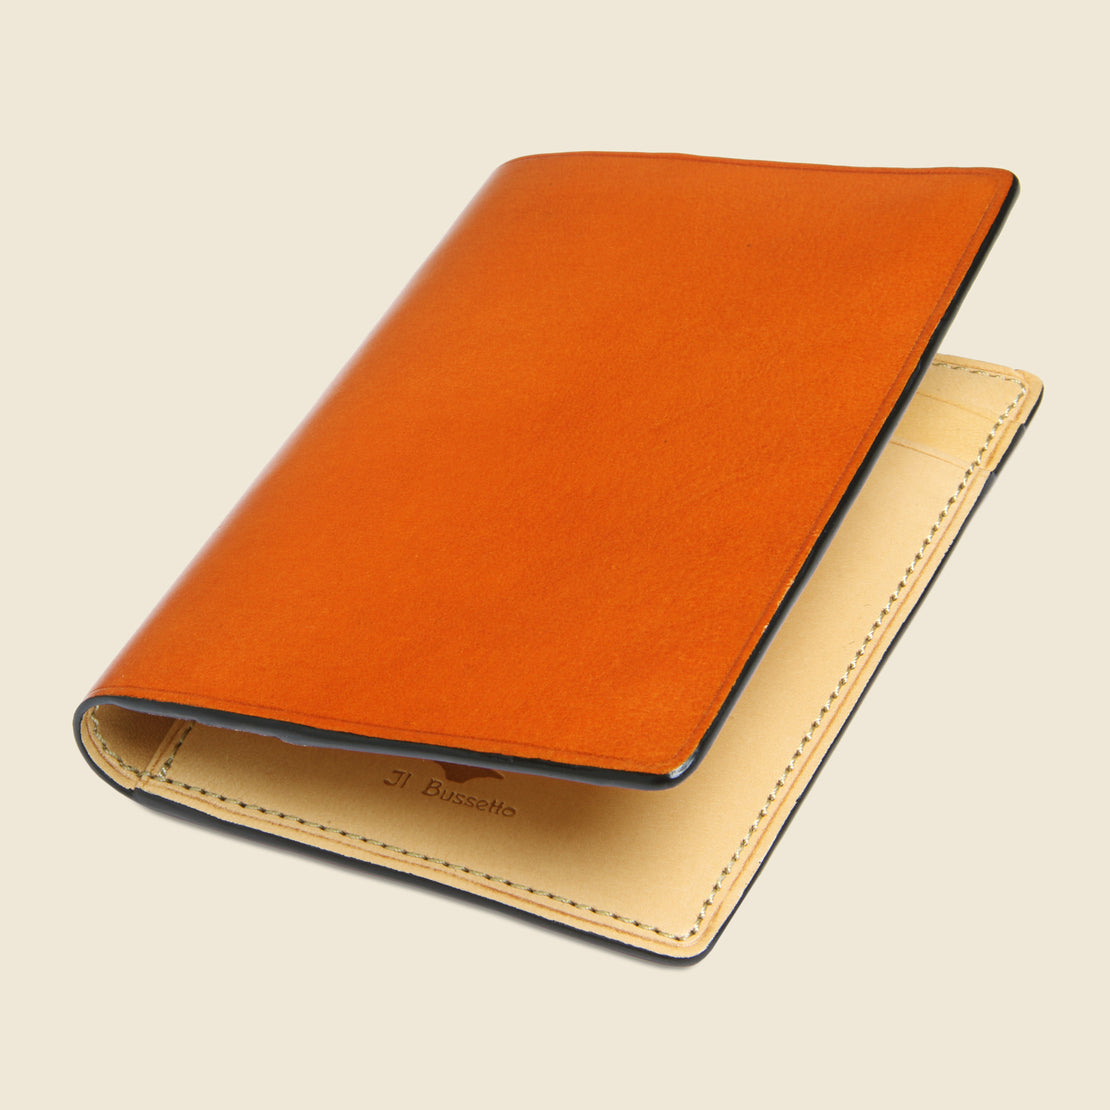 Bi-Fold Card Case - Orange - Il Bussetto - STAG Provisions - Accessories - Wallets